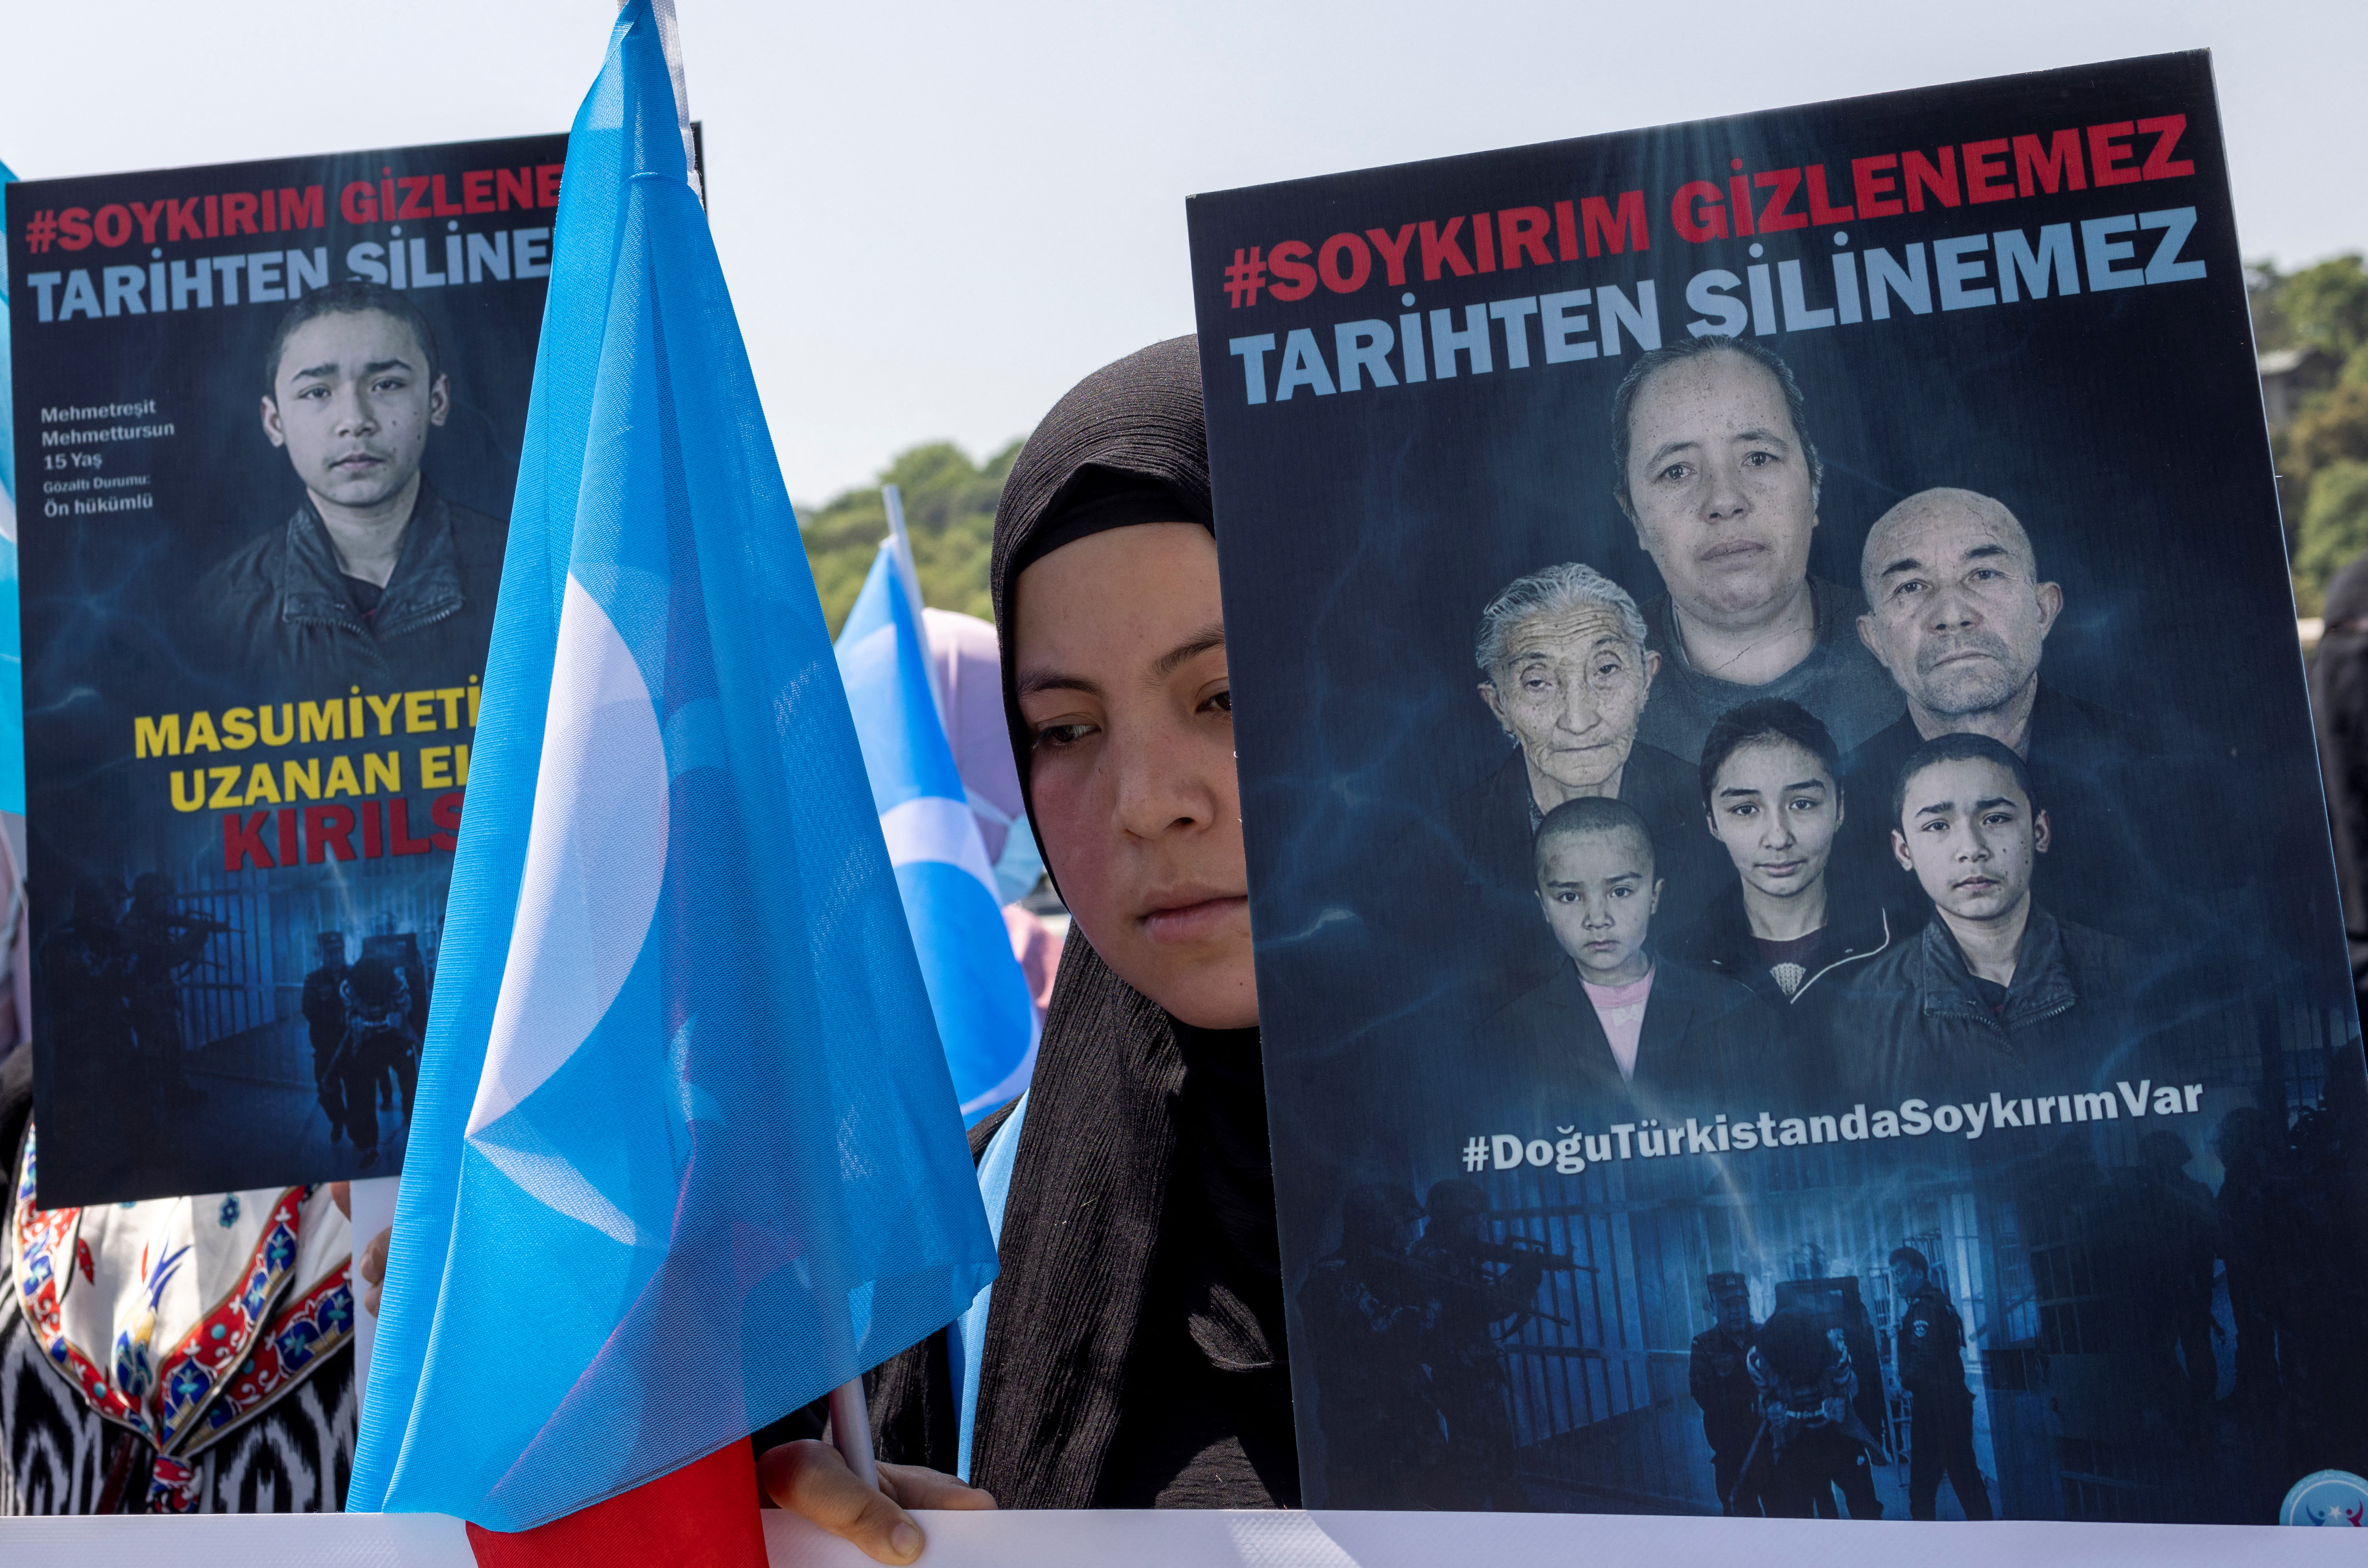 Una mujer de etnia uigur sostiene una bandera del Turquestán Oriental y una pancarta en la que se lee: "El genocidio es indiscutible, no puede ser borrado de la historia" durante una protesta contra China cerca del consulado chino en Estambul, Turquía, el 26 de mayo de 2022(REUTERS/Umit Bektas)